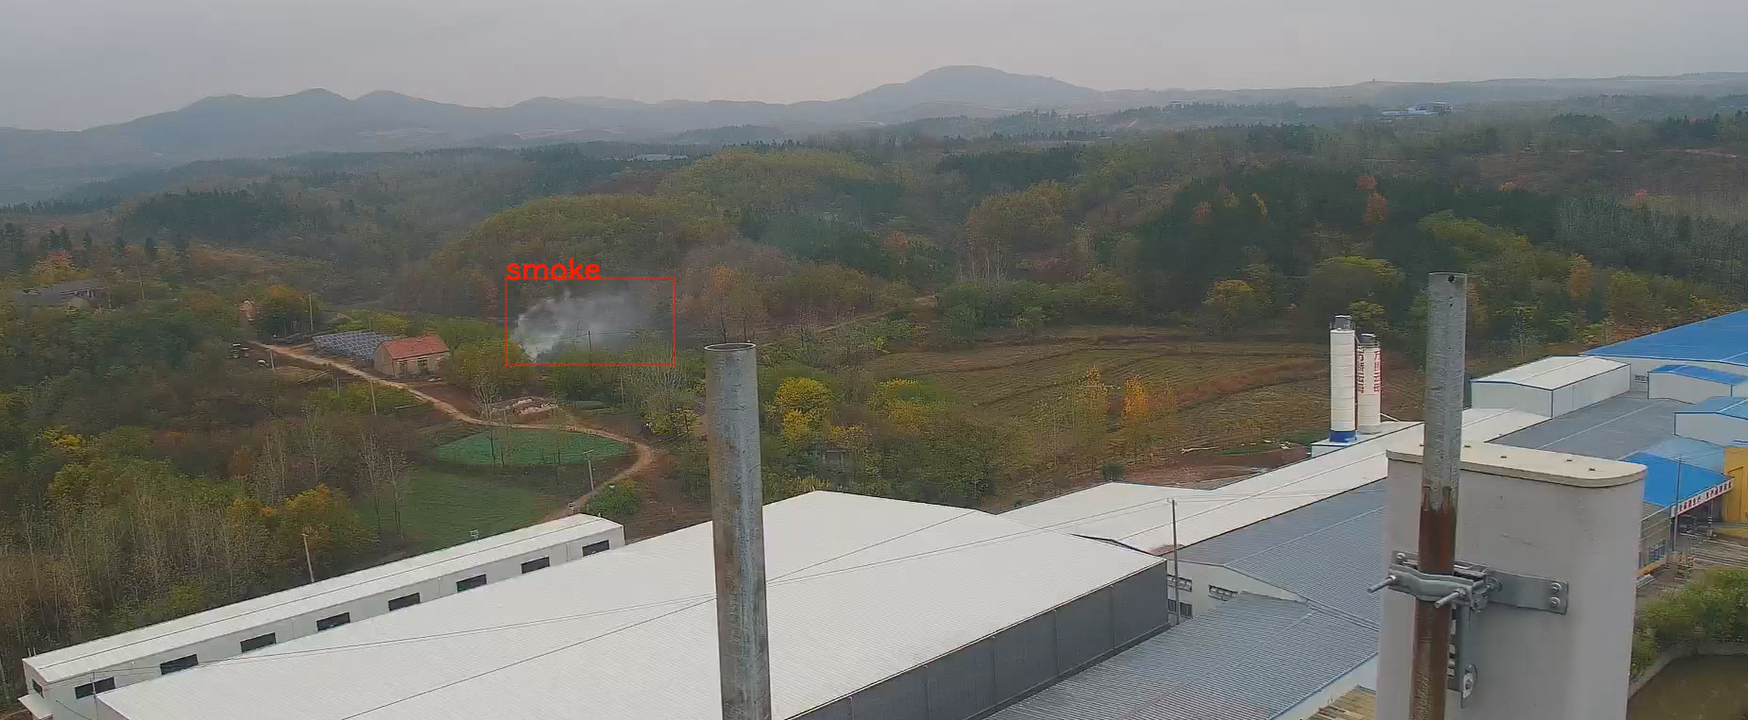 羚通视频智能分析平台提供烟雾和火焰的智能检测与识别系统_云平台_02